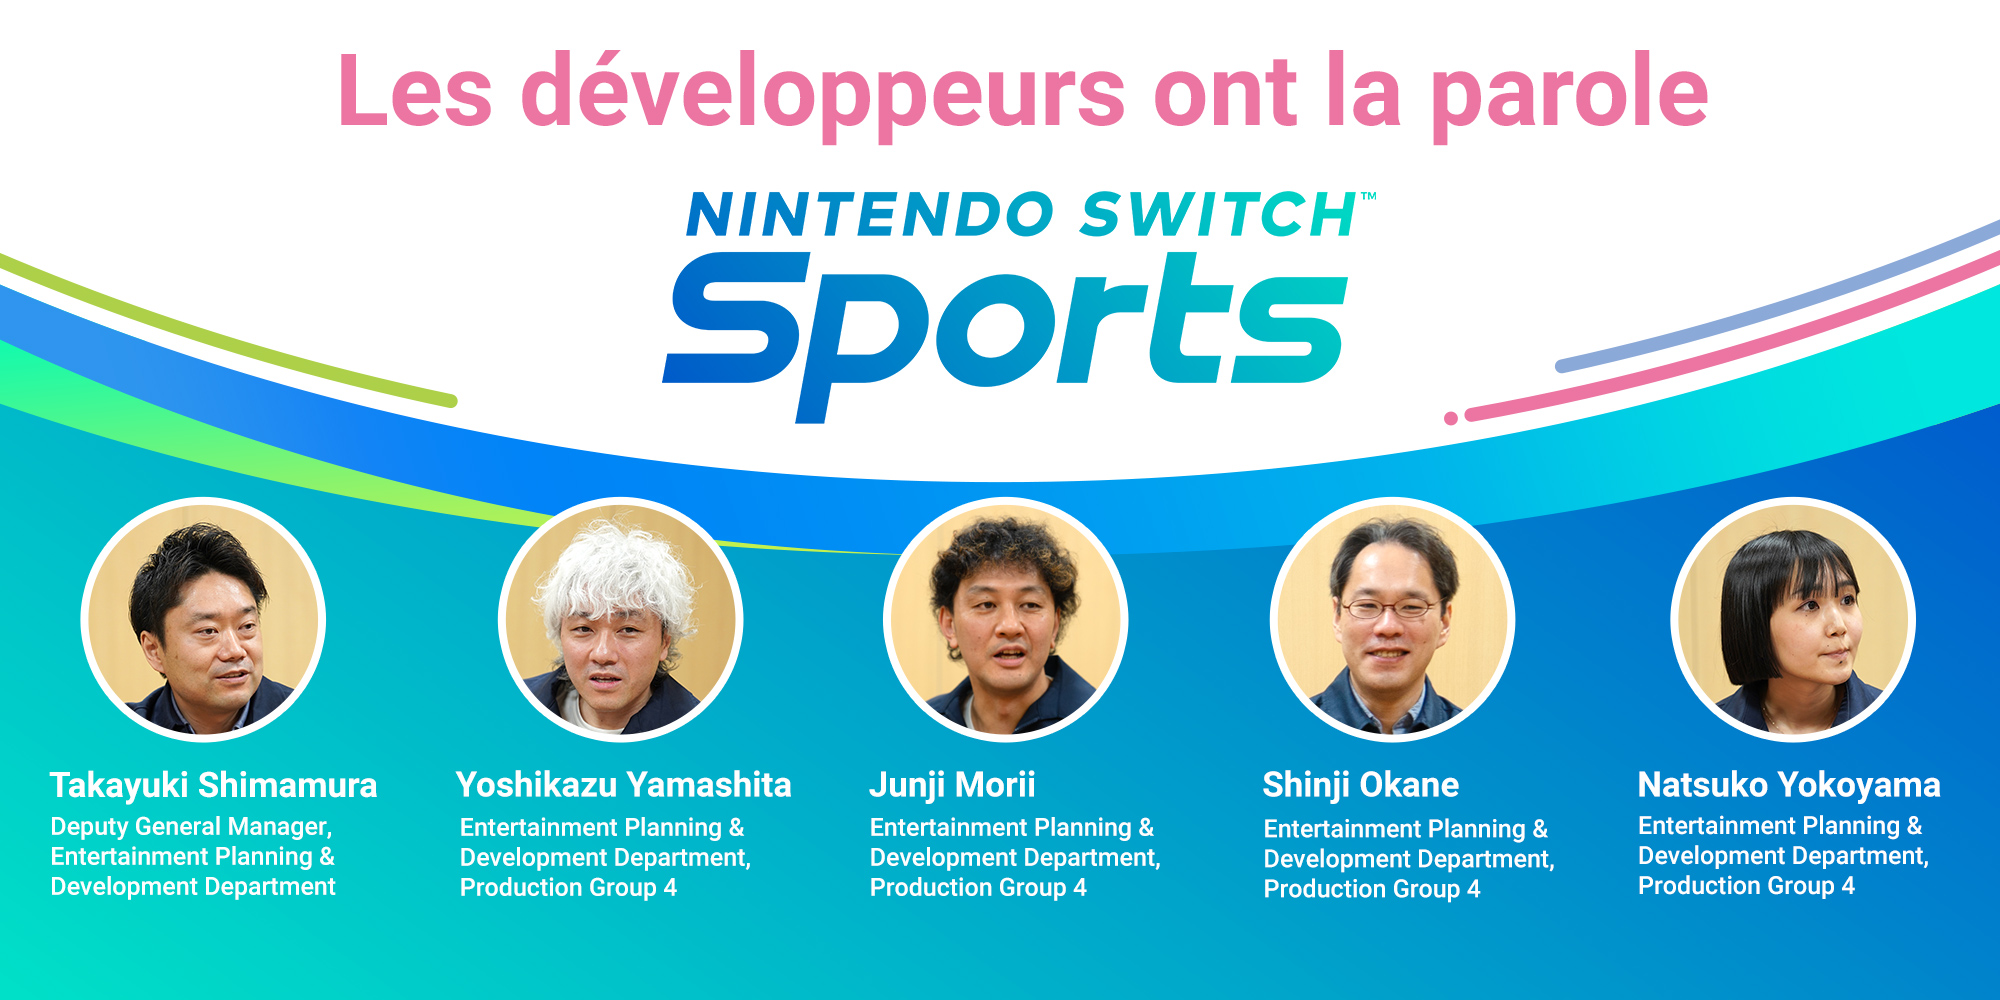 Les développeurs ont la parole, Vol. 5 : Nintendo Switch Sports